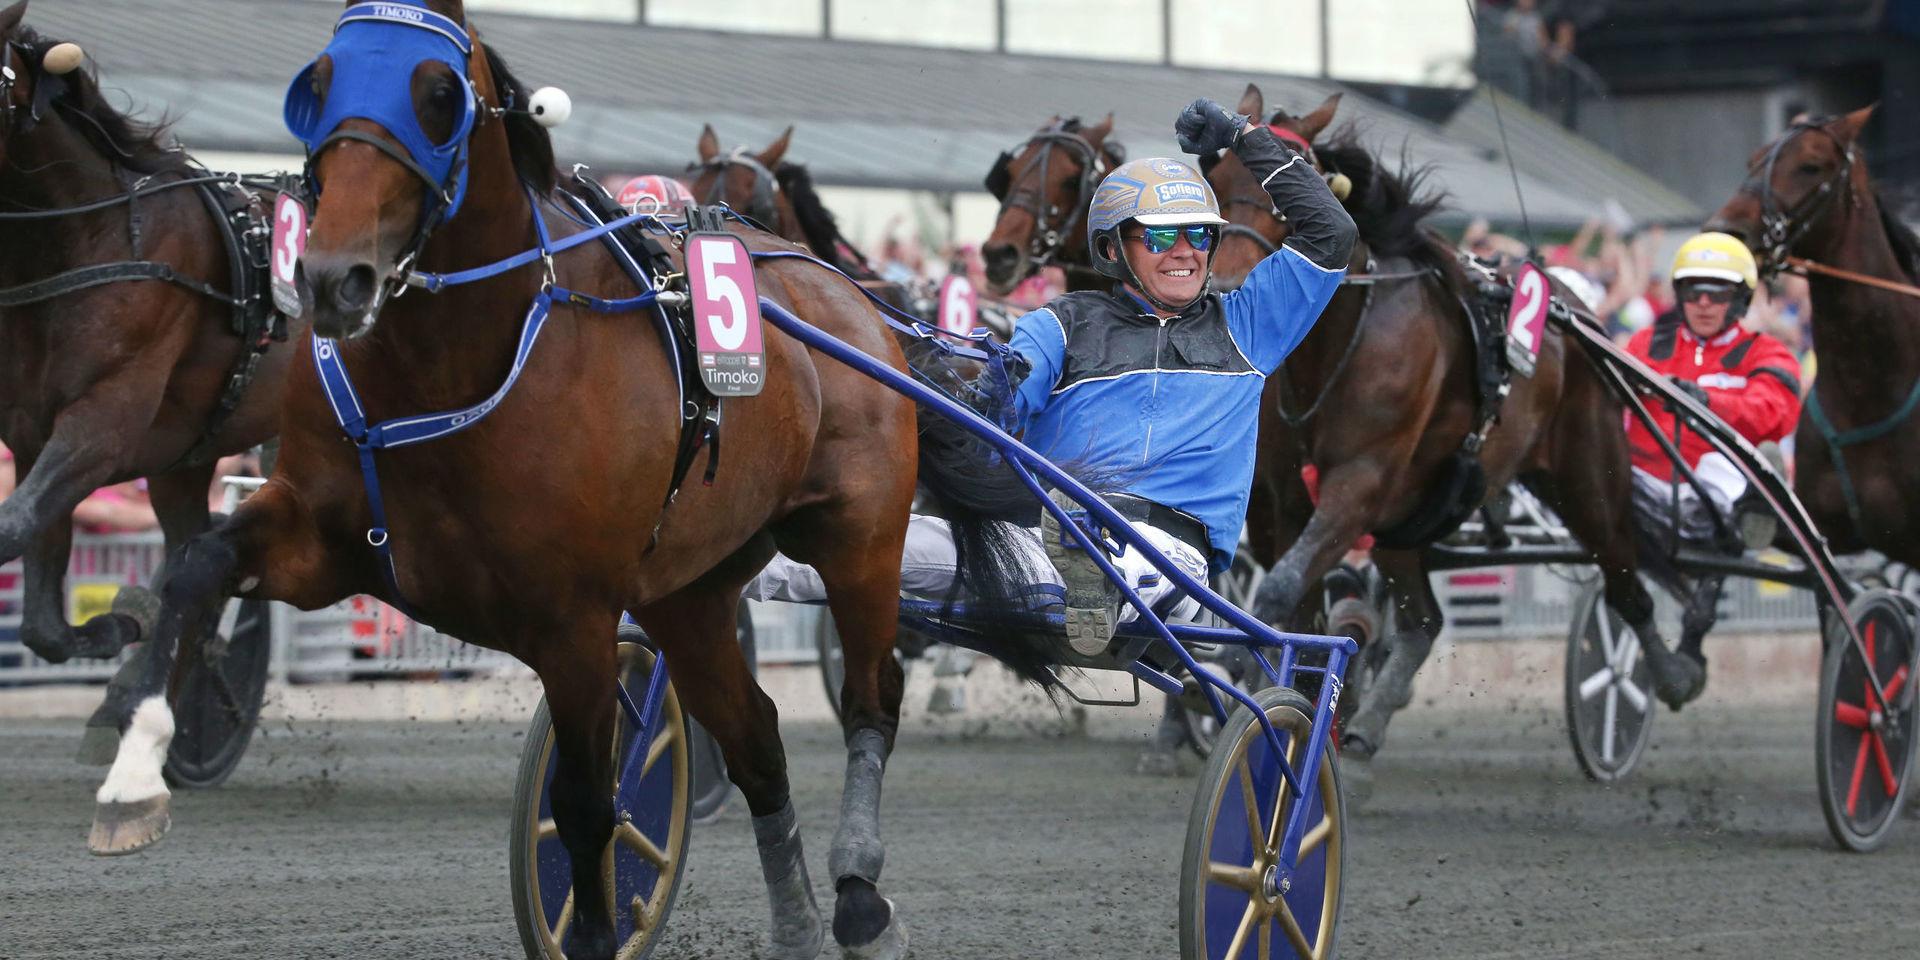 2017 vann Björn Goop Elitloppet för tredje gången med franska hästen Timoko. I år har han chansen att bli den näst segerrikaste kusken i Elitloppsammanhang genom alla tider.